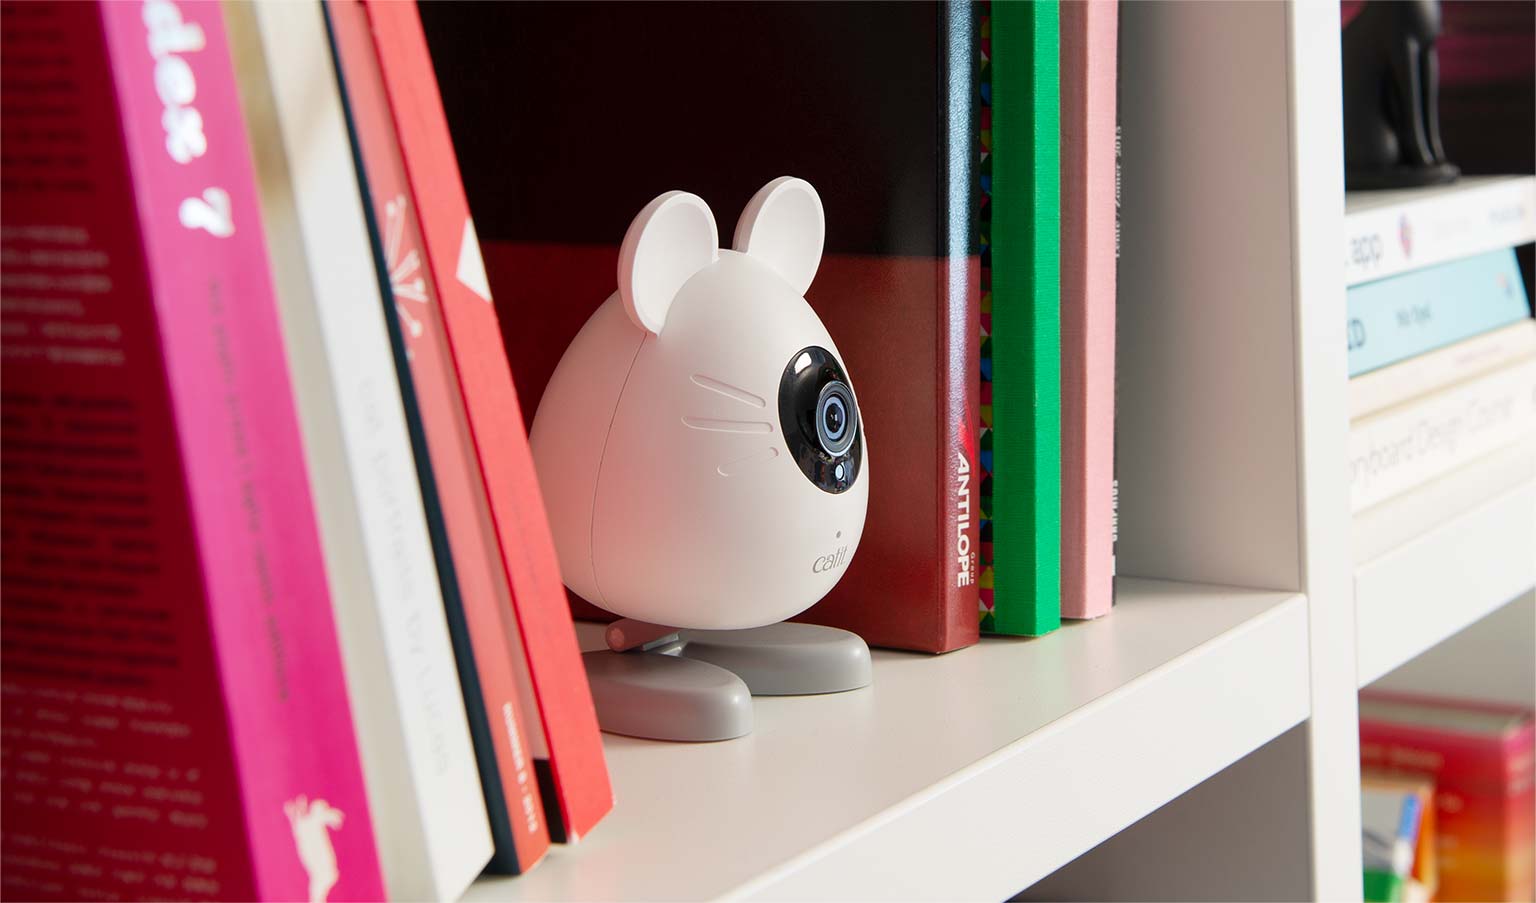 PIXI Smart Mouse Camera uitgestald op een boekenrek.